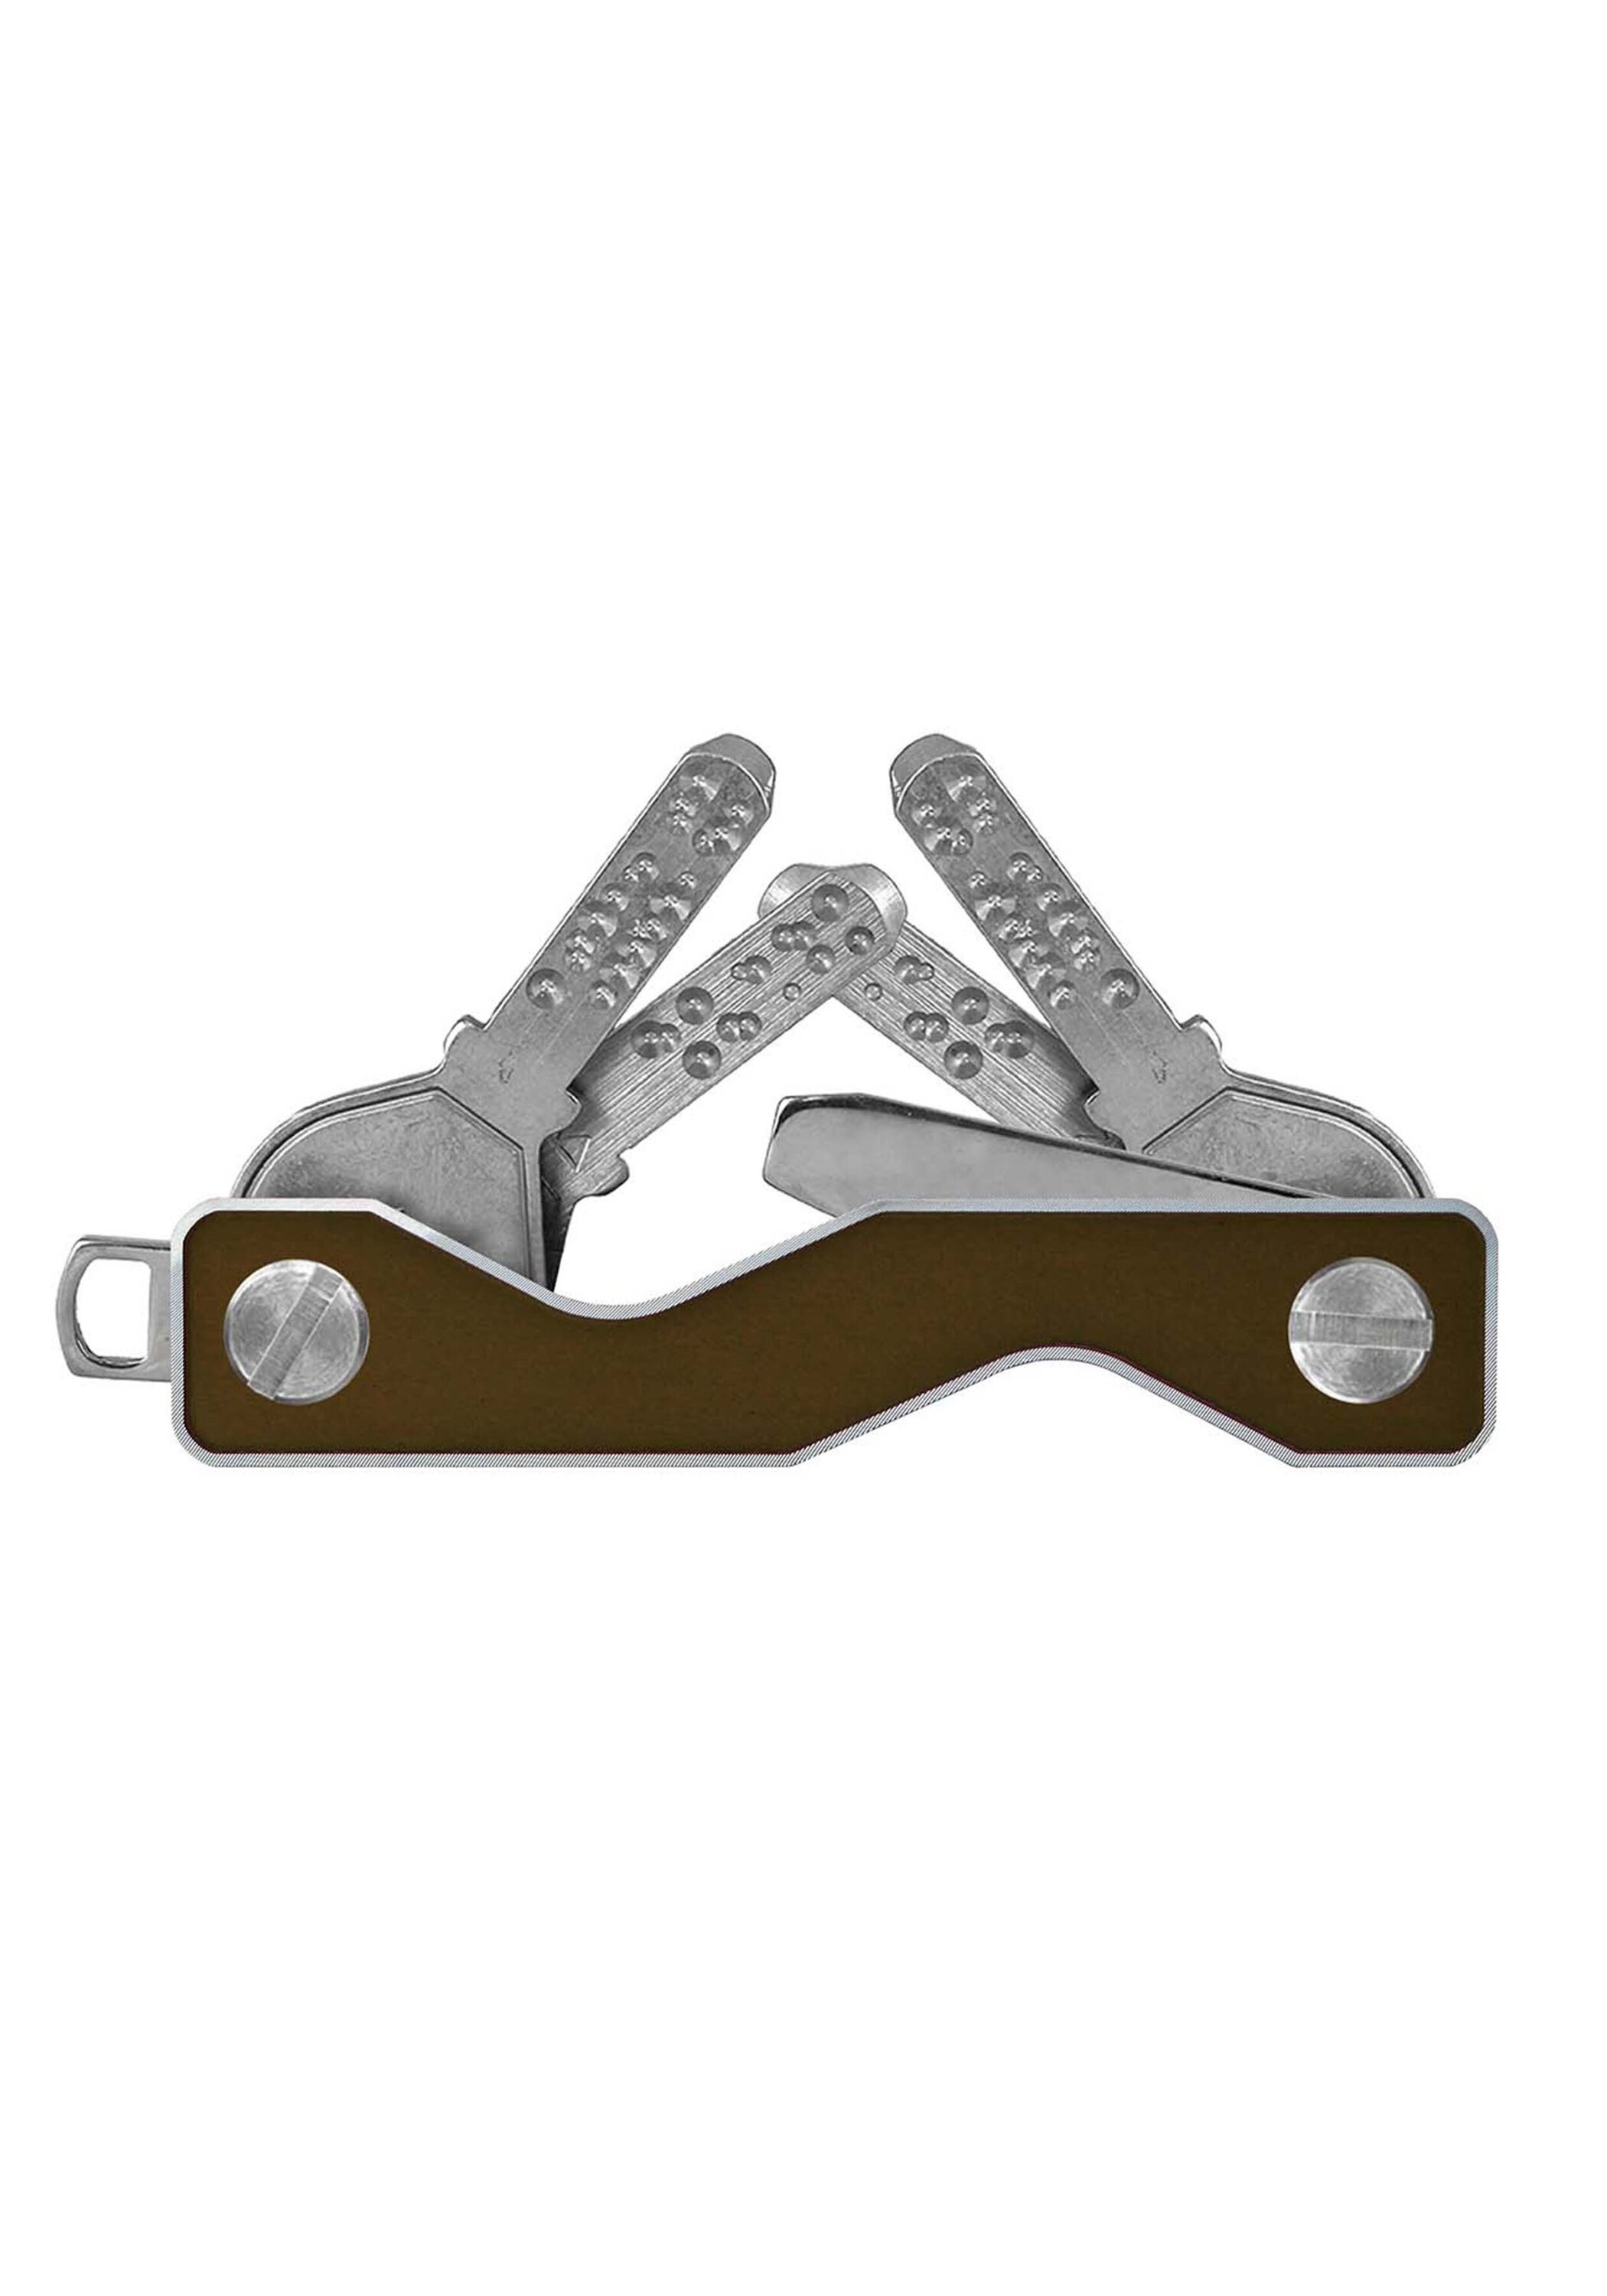 SWISS keycabins kaufen »Aluminium online BAUR S3«, frame Schlüsselanhänger | made